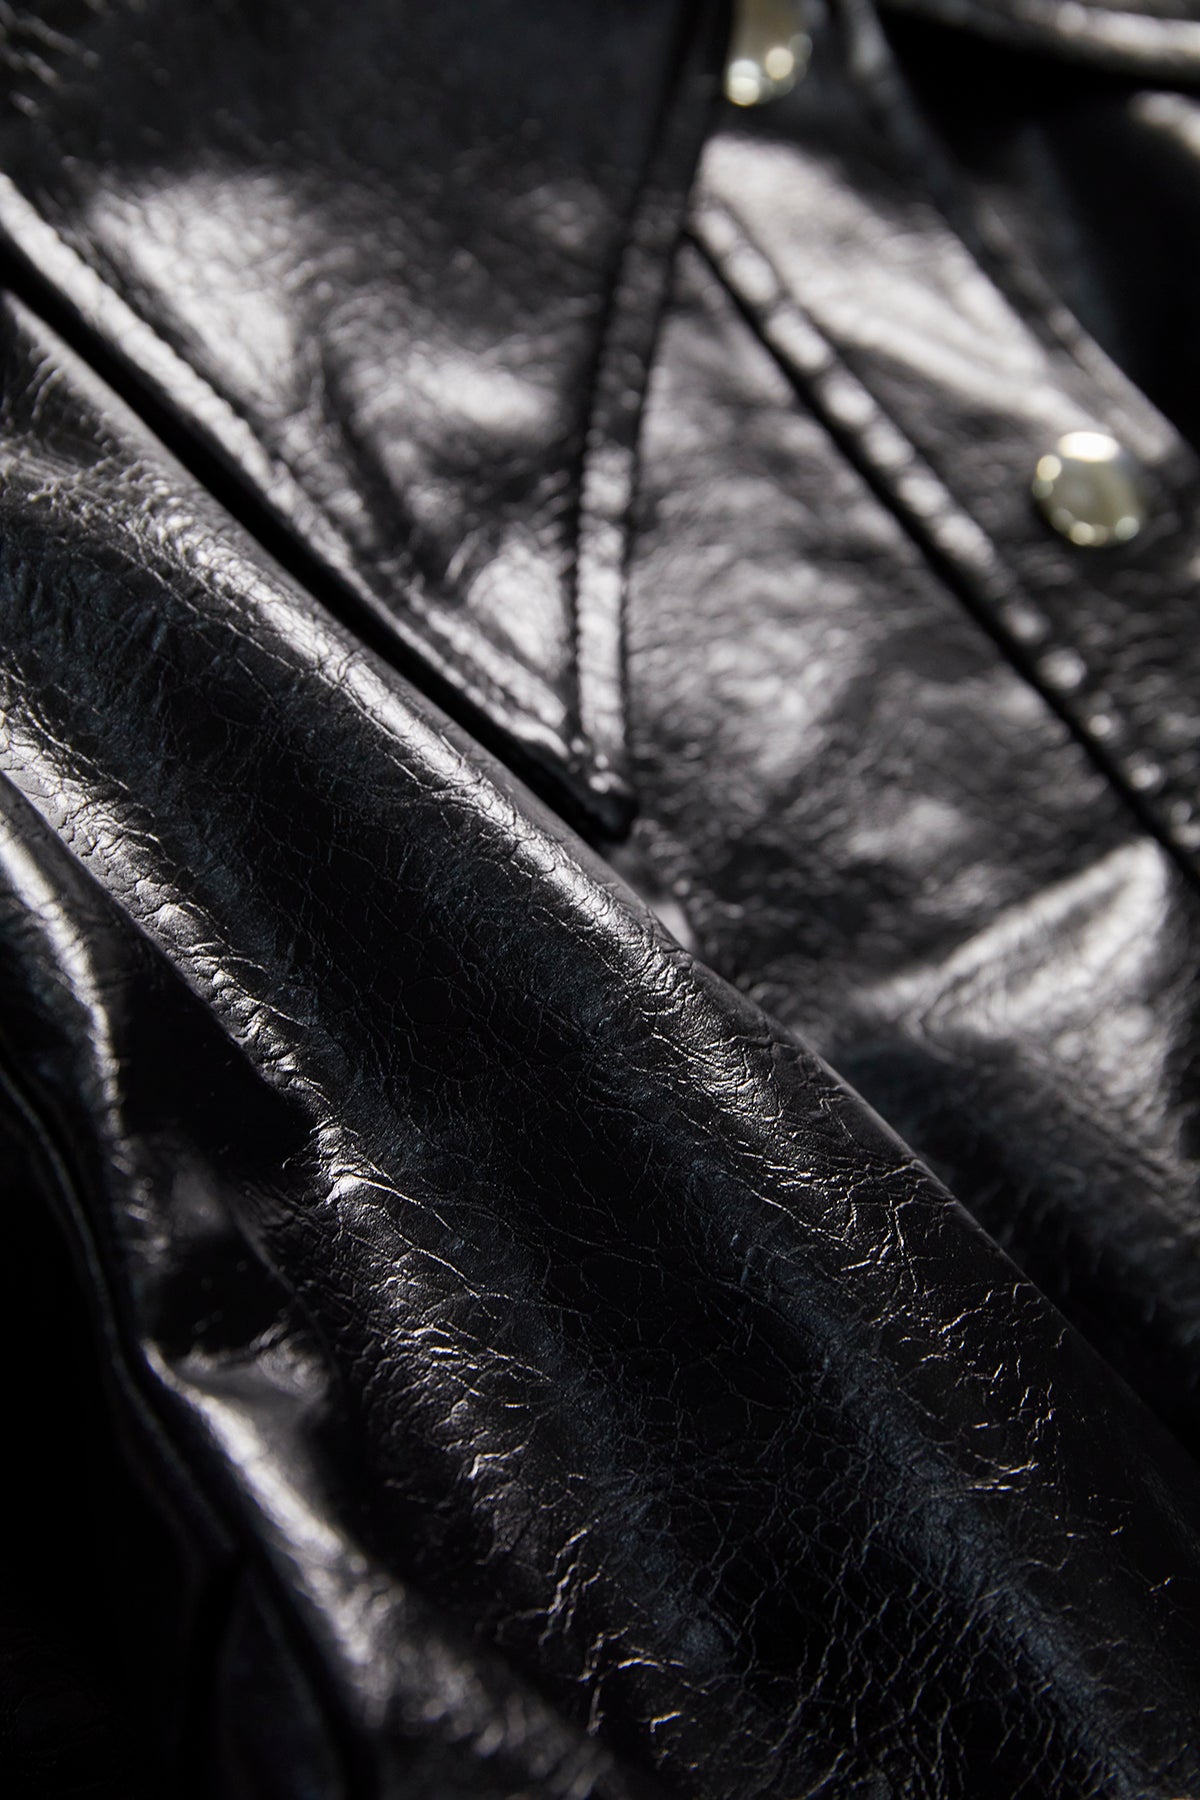 Fake leather jacket / Black